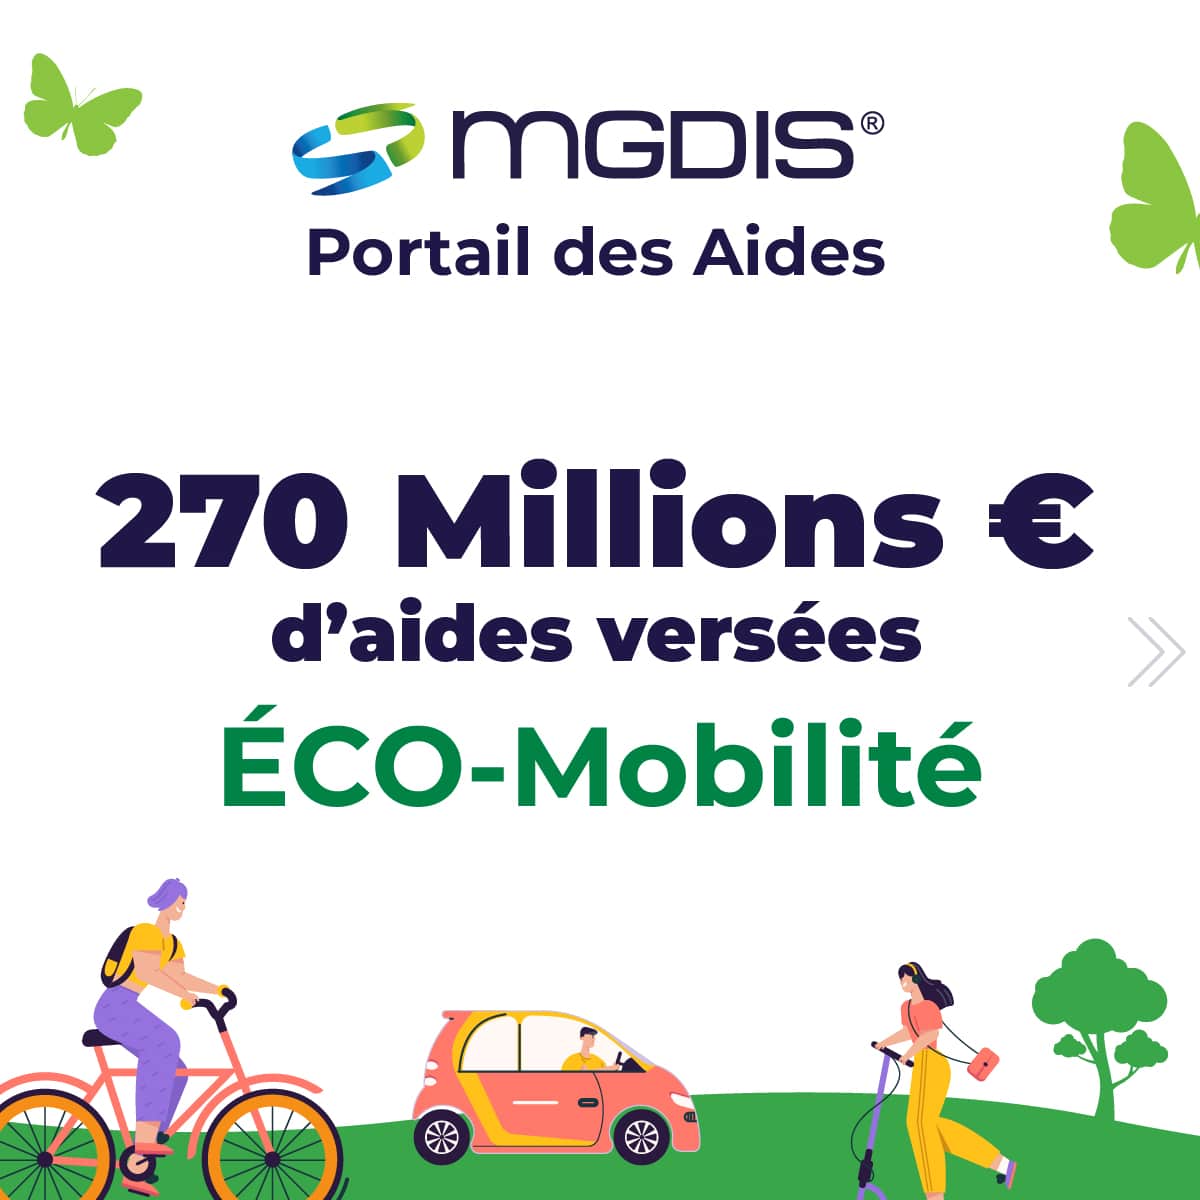 Portail-des-aides-MGDIS-ecomobilite-infographie-1